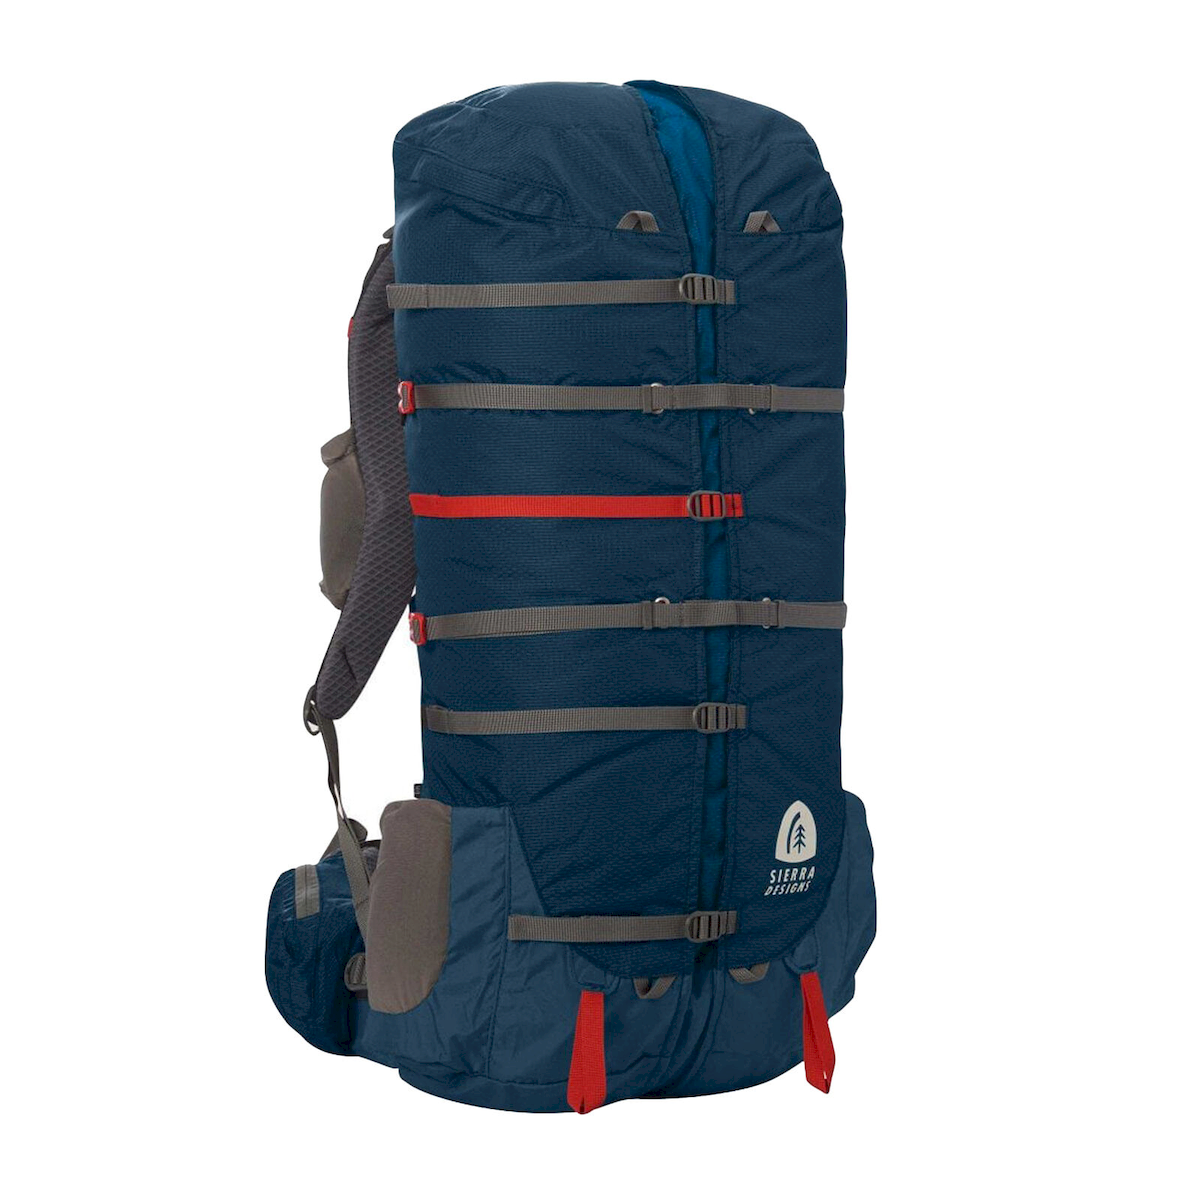 Sierra Designs Flex Capacitor 60-75 - Hiking backpack